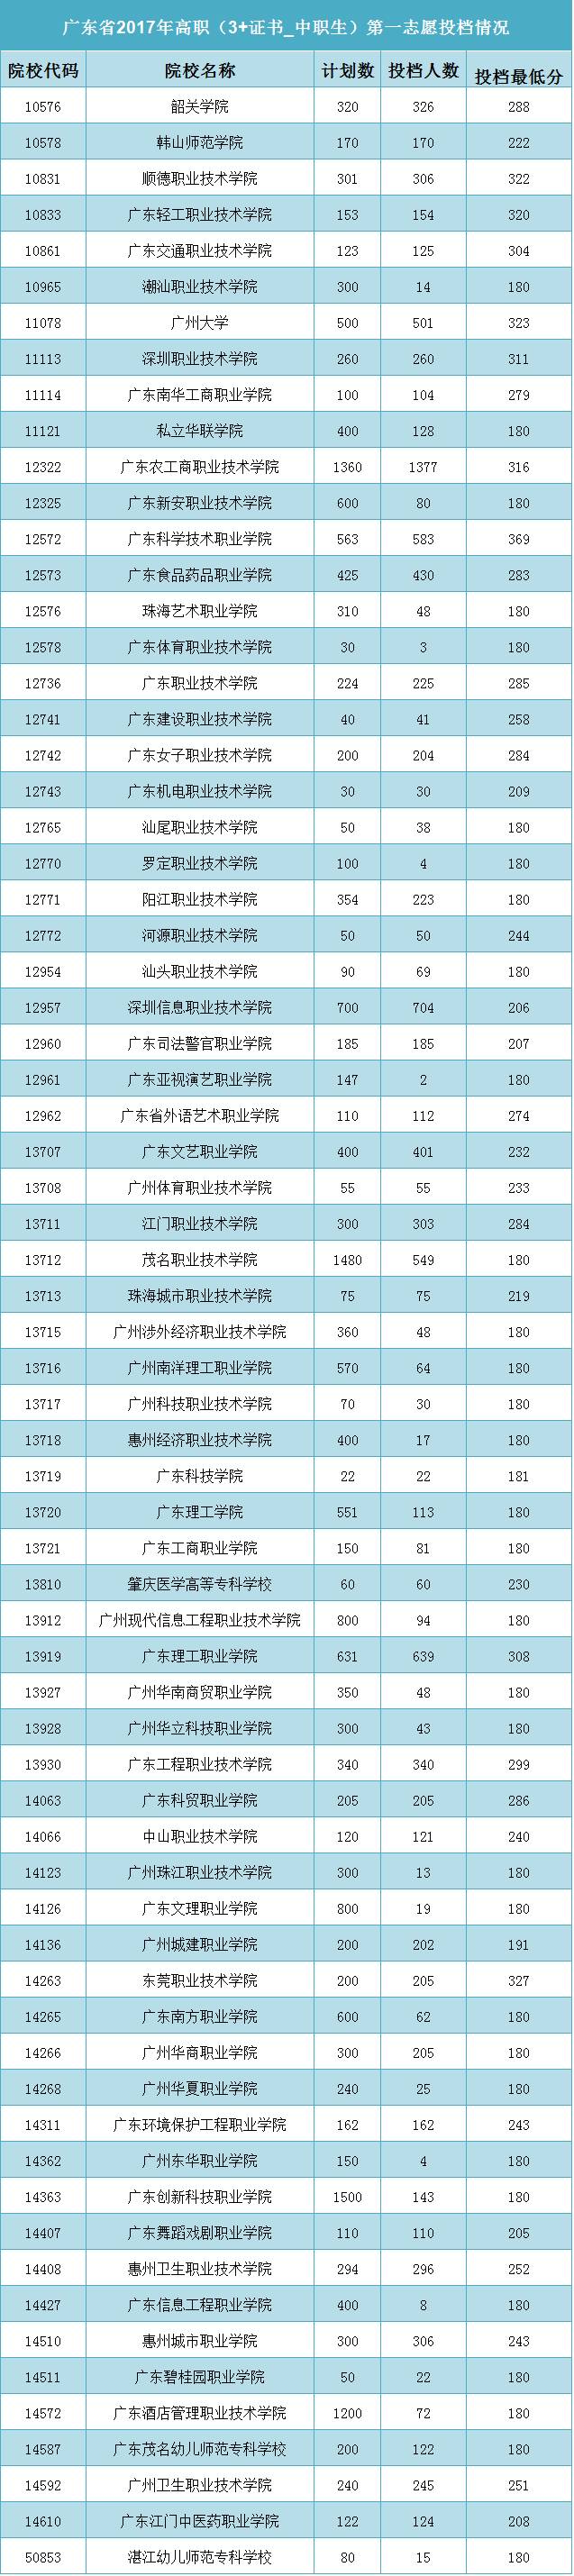 广东省2017年高职（3+证书_中职生）第一志愿投档情况公布